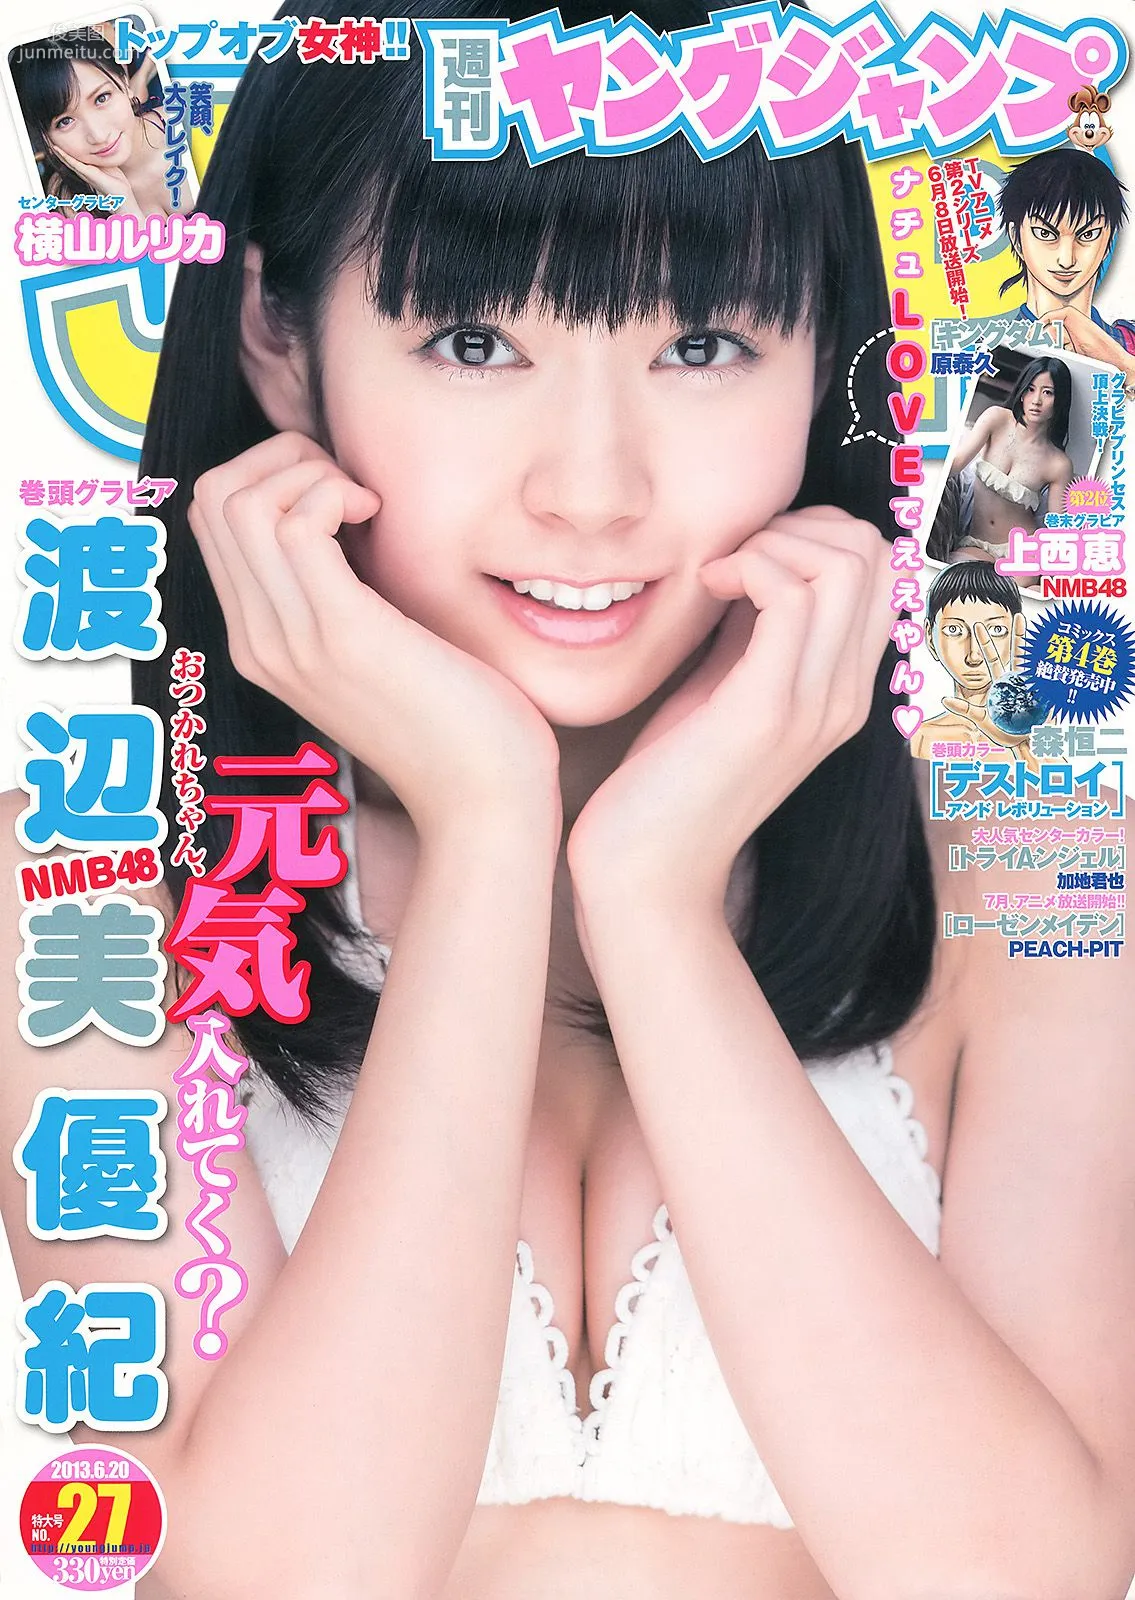 渡辺美優紀 横山めぐみ 上西恵 [Weekly Young Jump] 2013年No.27 写真杂志1